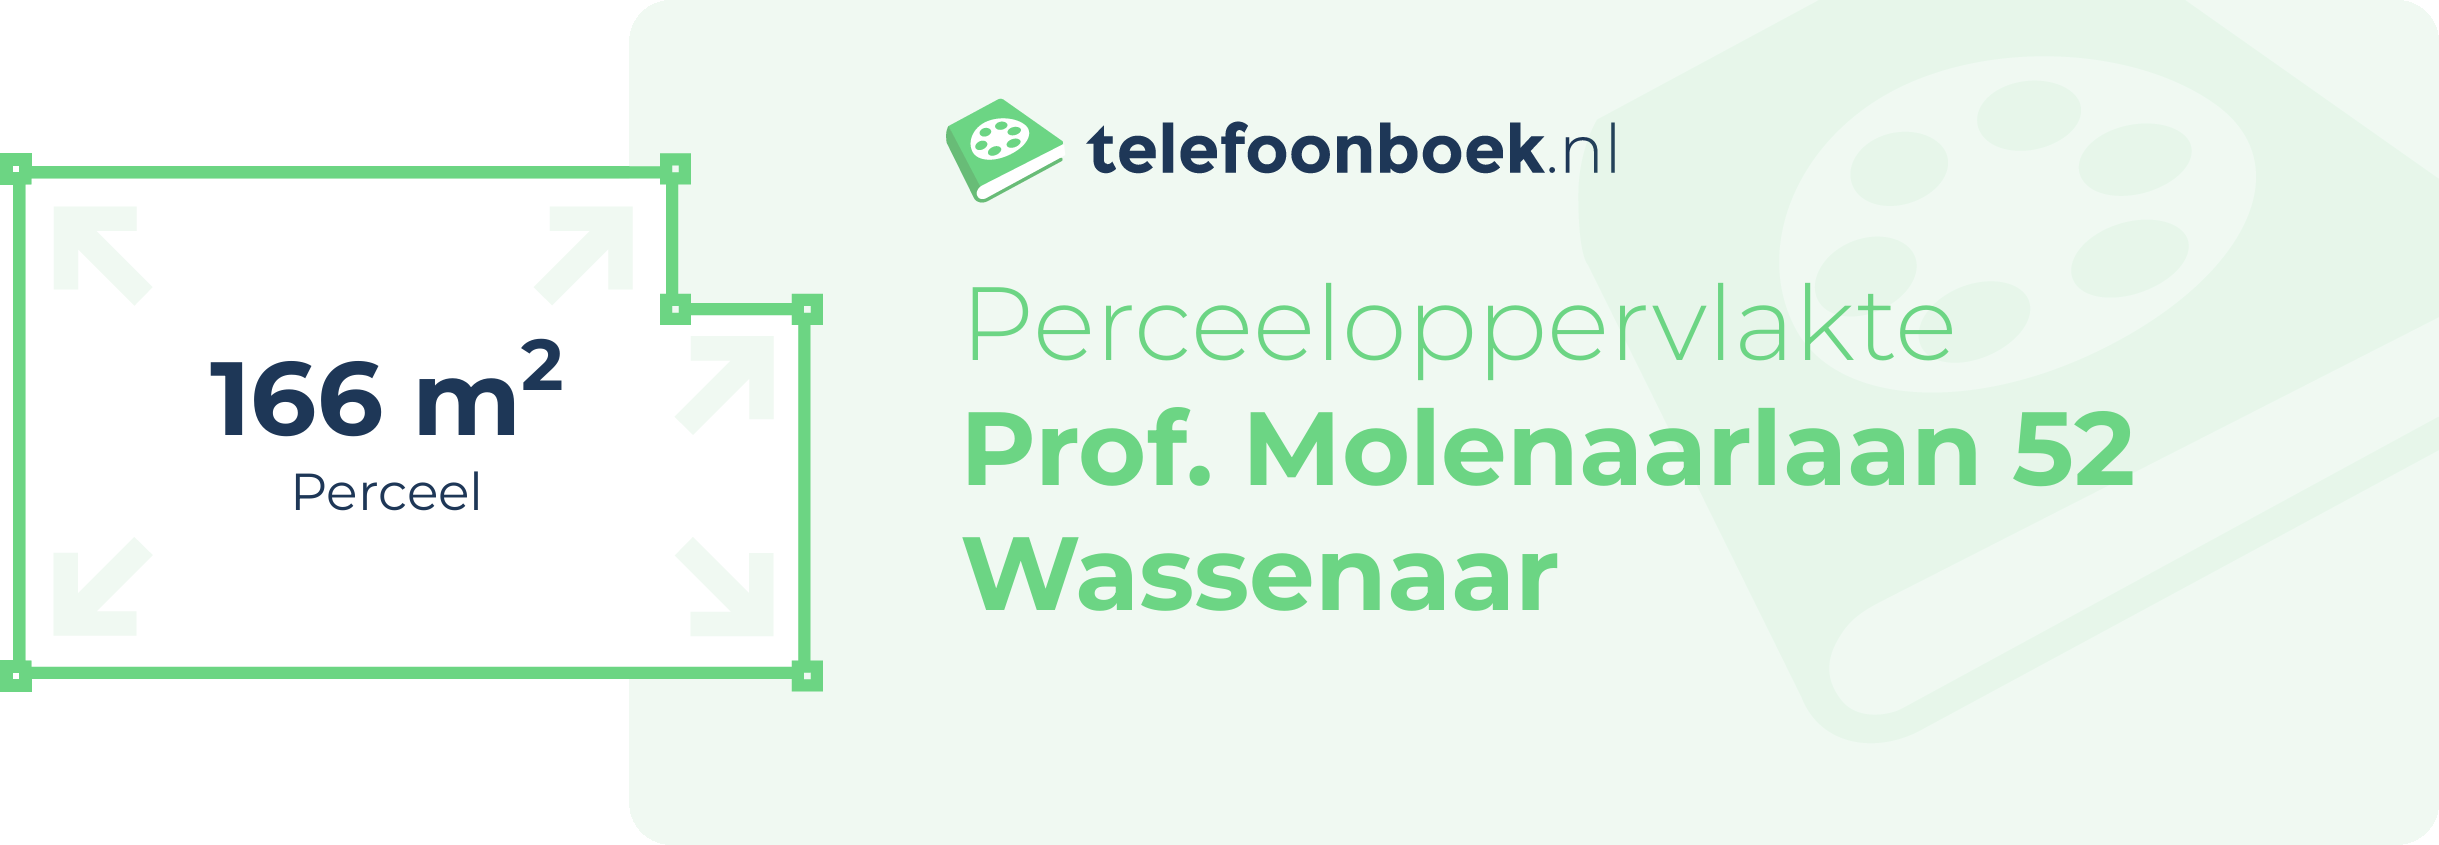 Perceeloppervlakte Prof. Molenaarlaan 52 Wassenaar